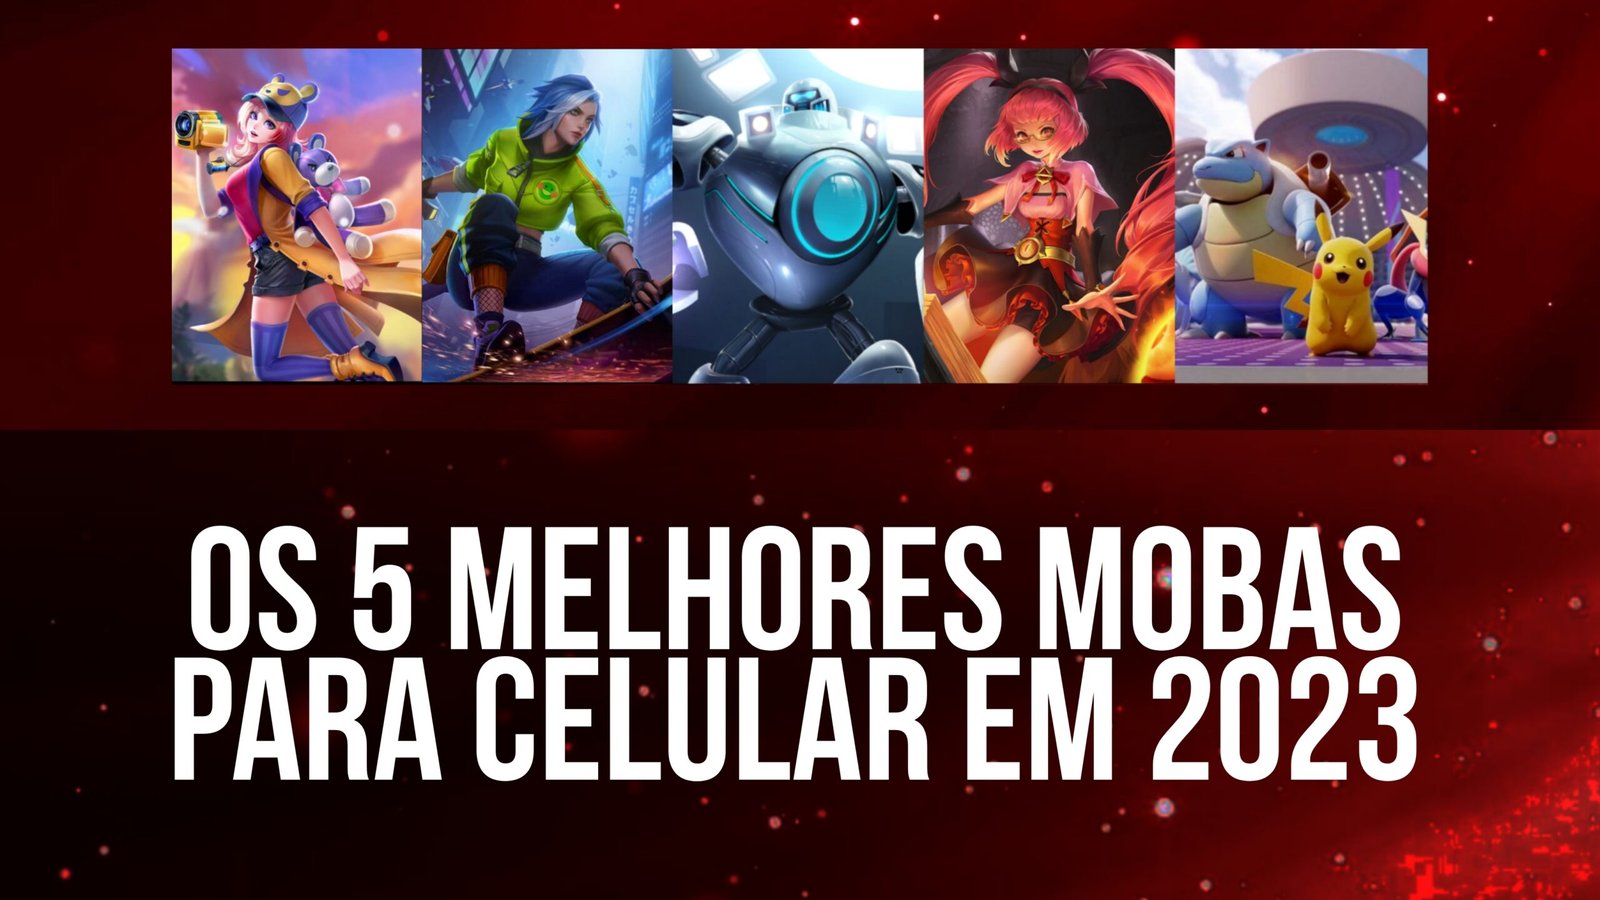 Quais os principais e mais populares jogos MOBA para celular em 2023?